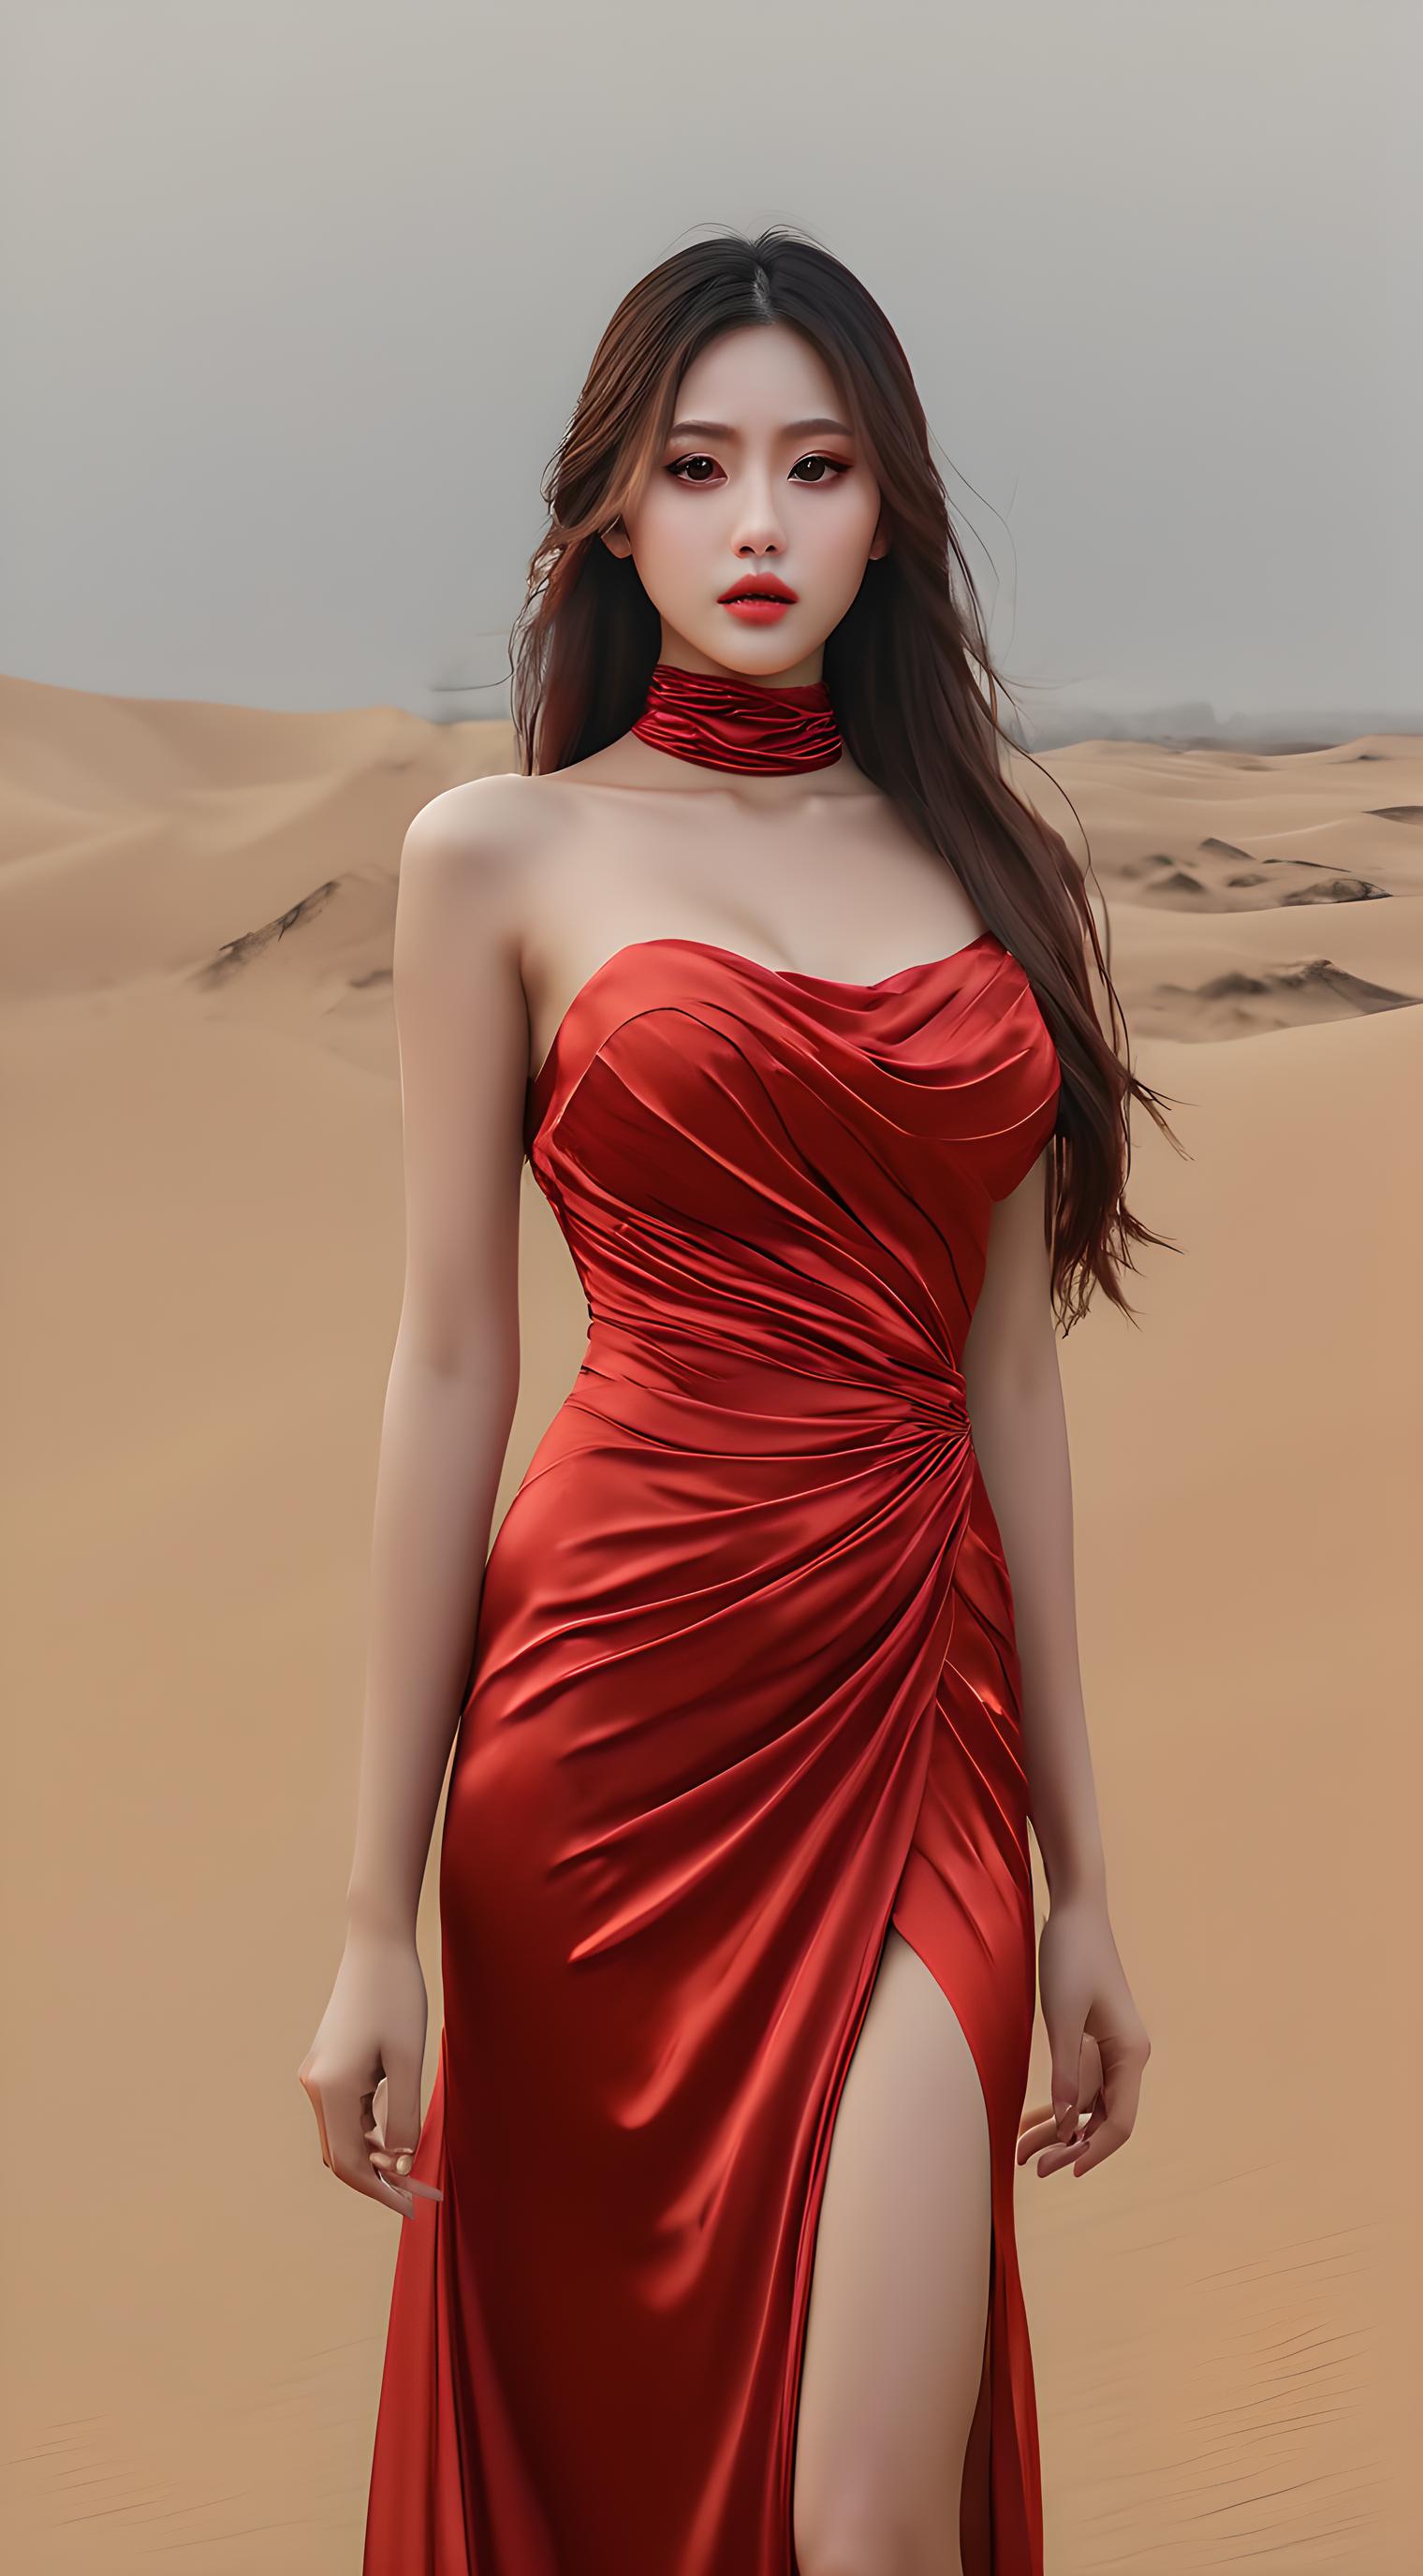 沙漠红裙女孩